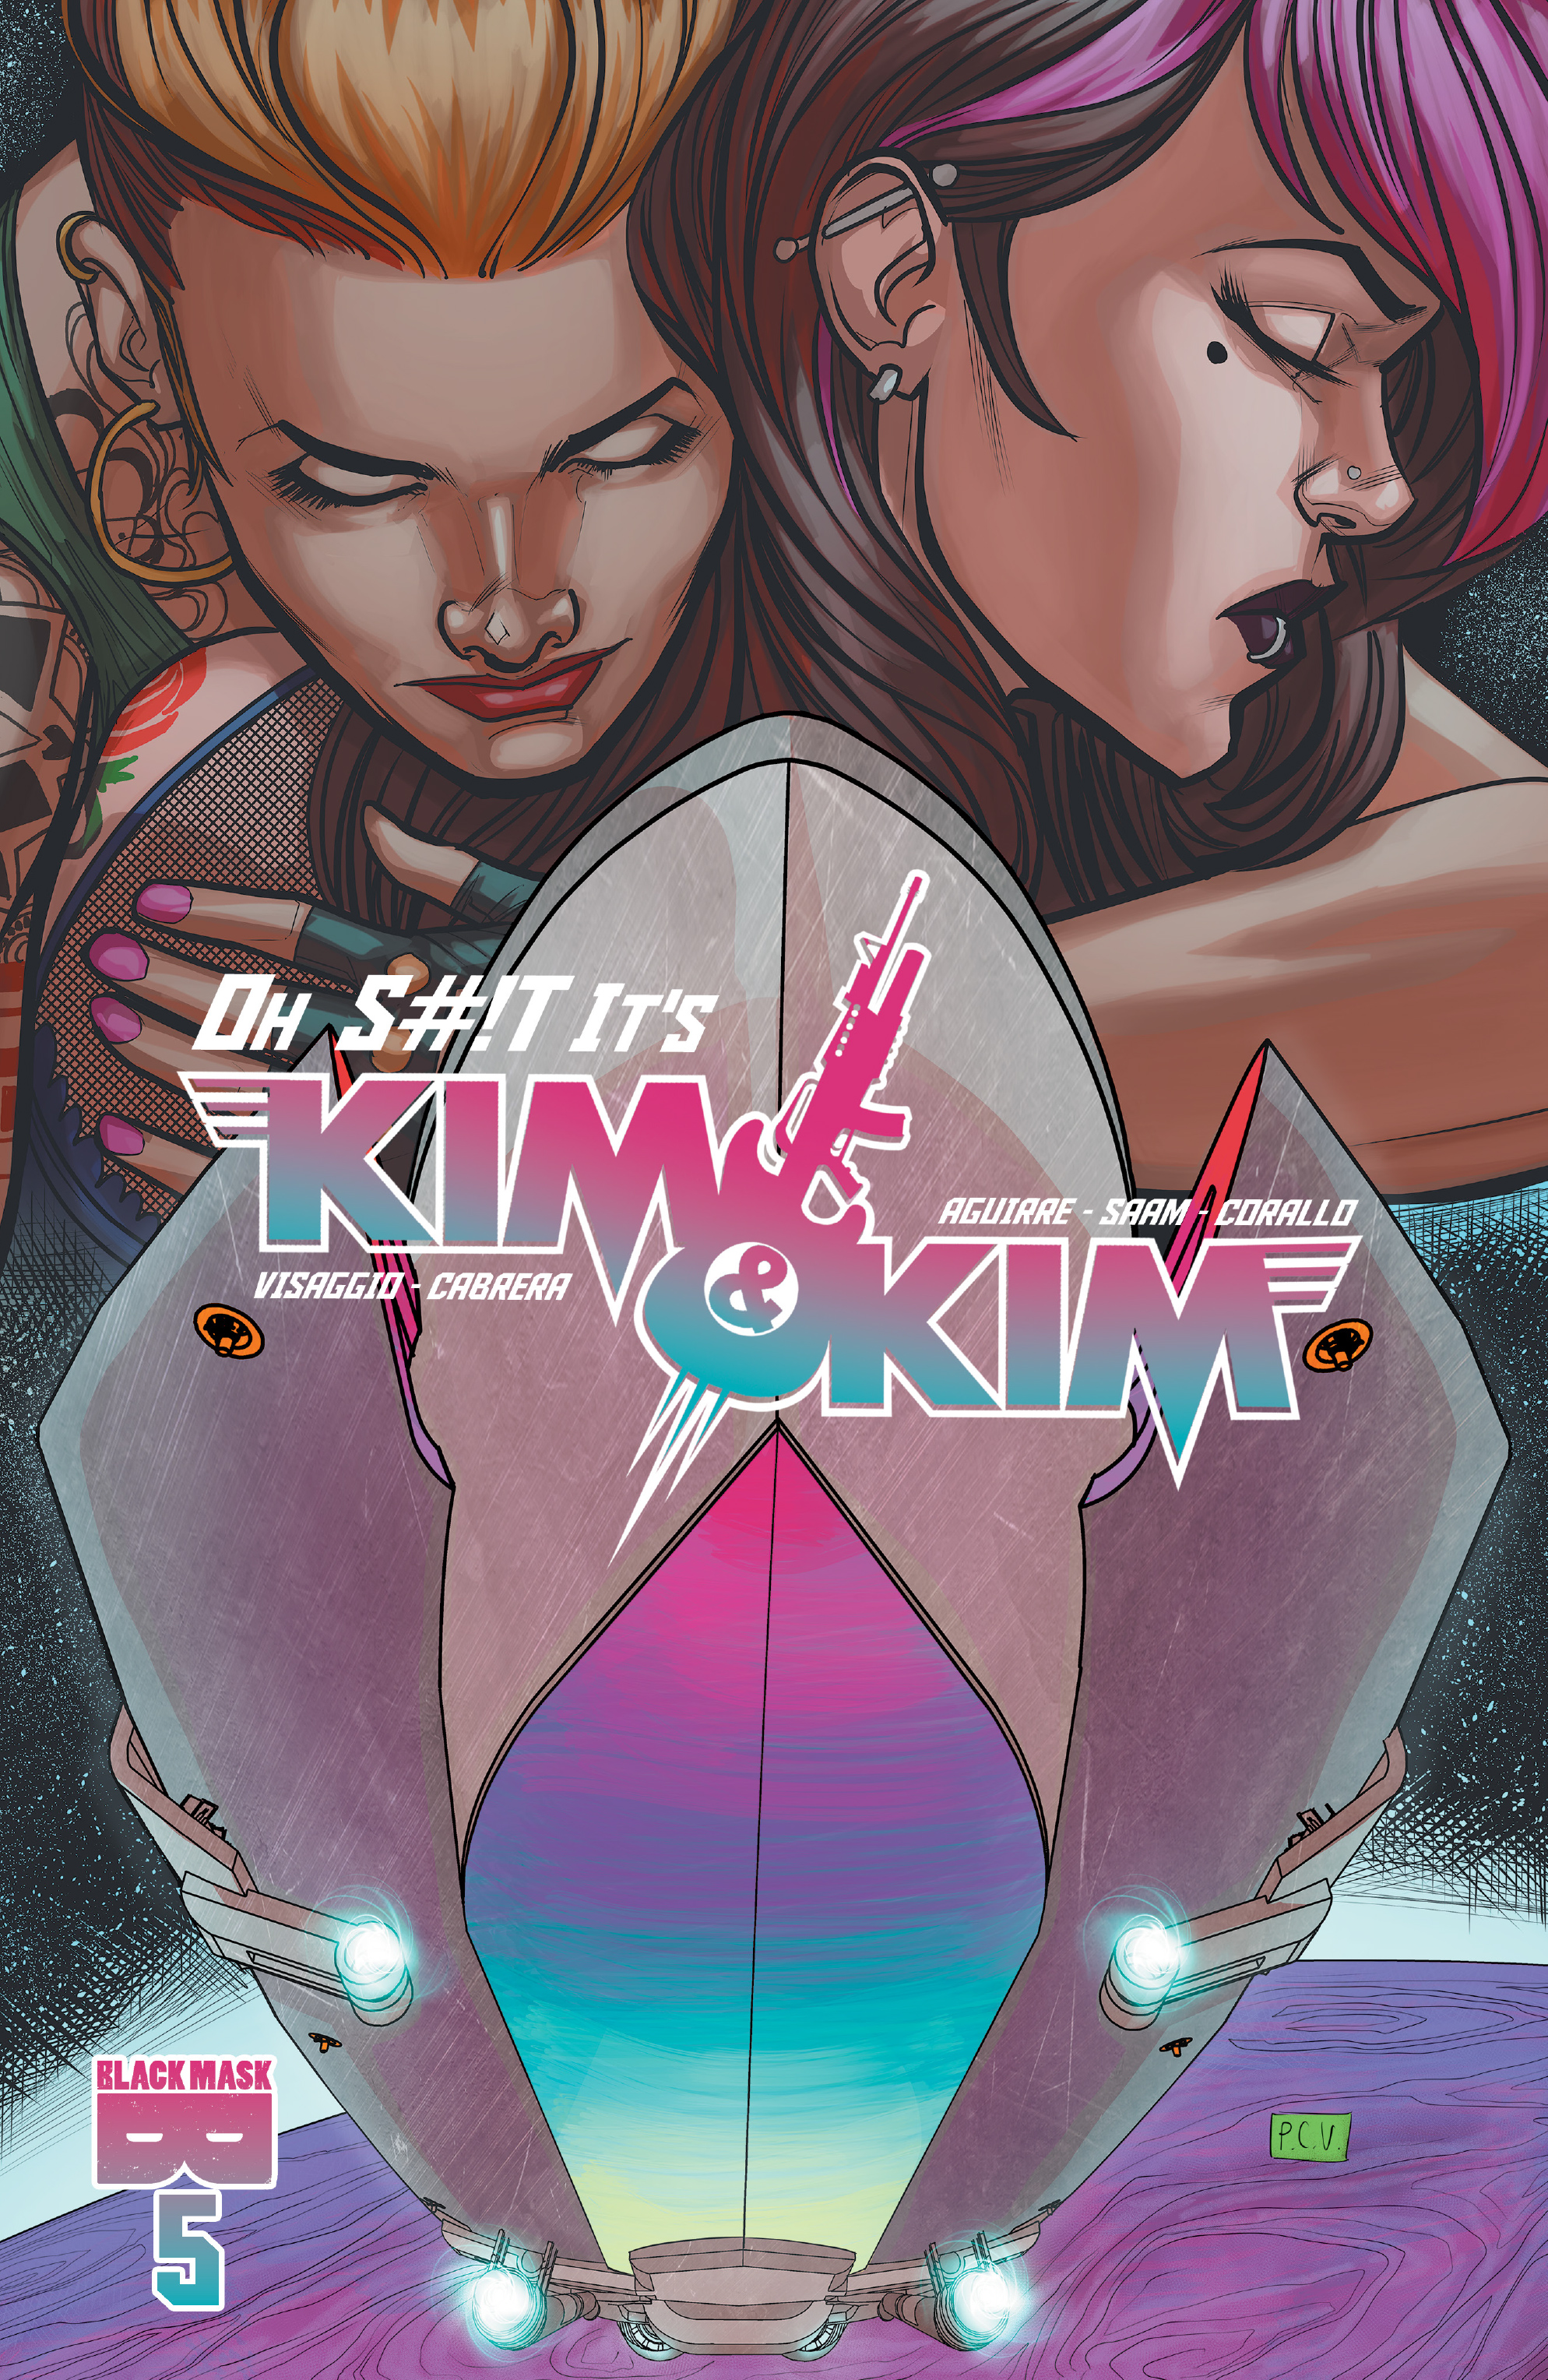 Read online Oh S#!t It's Kim & Kim comic -  Issue #!t It's Kim & Kim Issue - 1